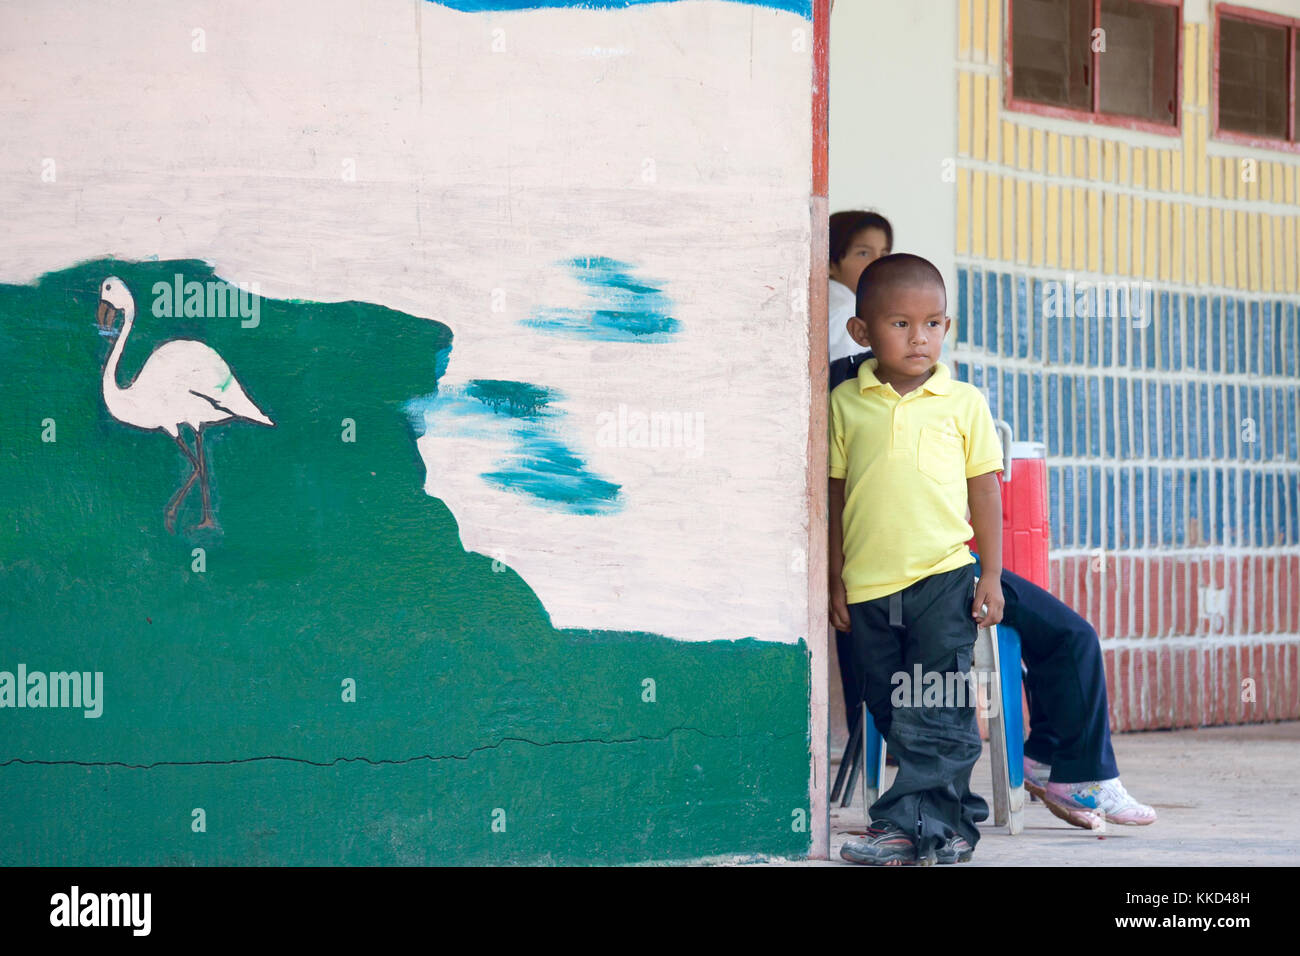 Lokale indigene Kinder neben der Schule an der Wand während der kurzen Pause zwischen den Klassen Stockfoto